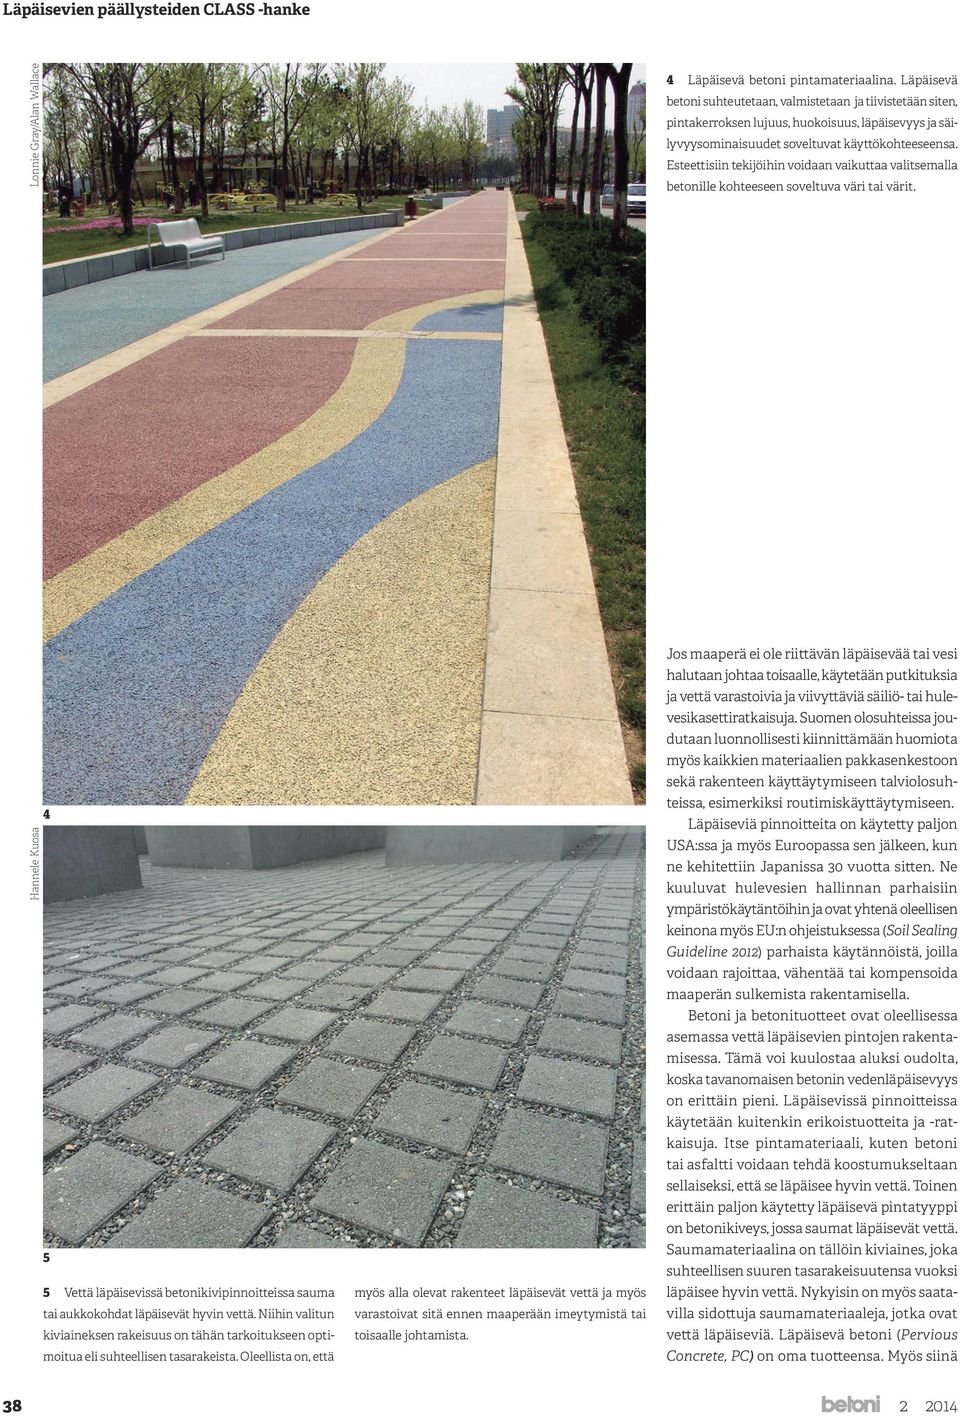 Esteettisiin tekijöihin voidaan vaikuttaa valitsemalla betonille kohteeseen soveltuva väri tai värit.